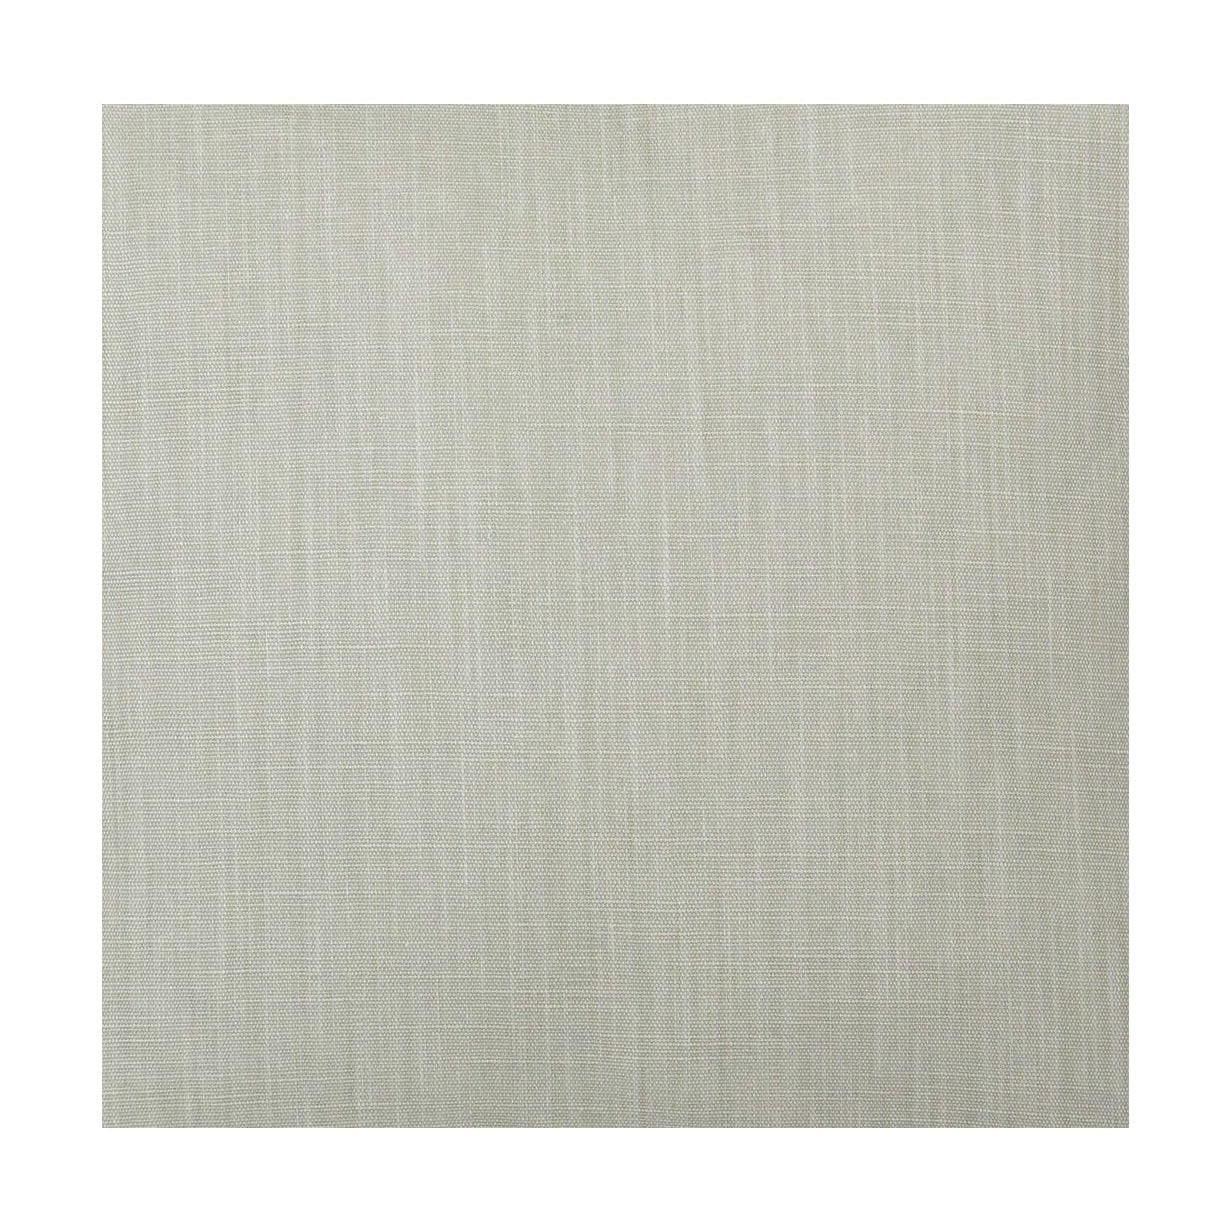 Spira Klotz Fabric Width 150 Cm (Price Per Meter), Linen